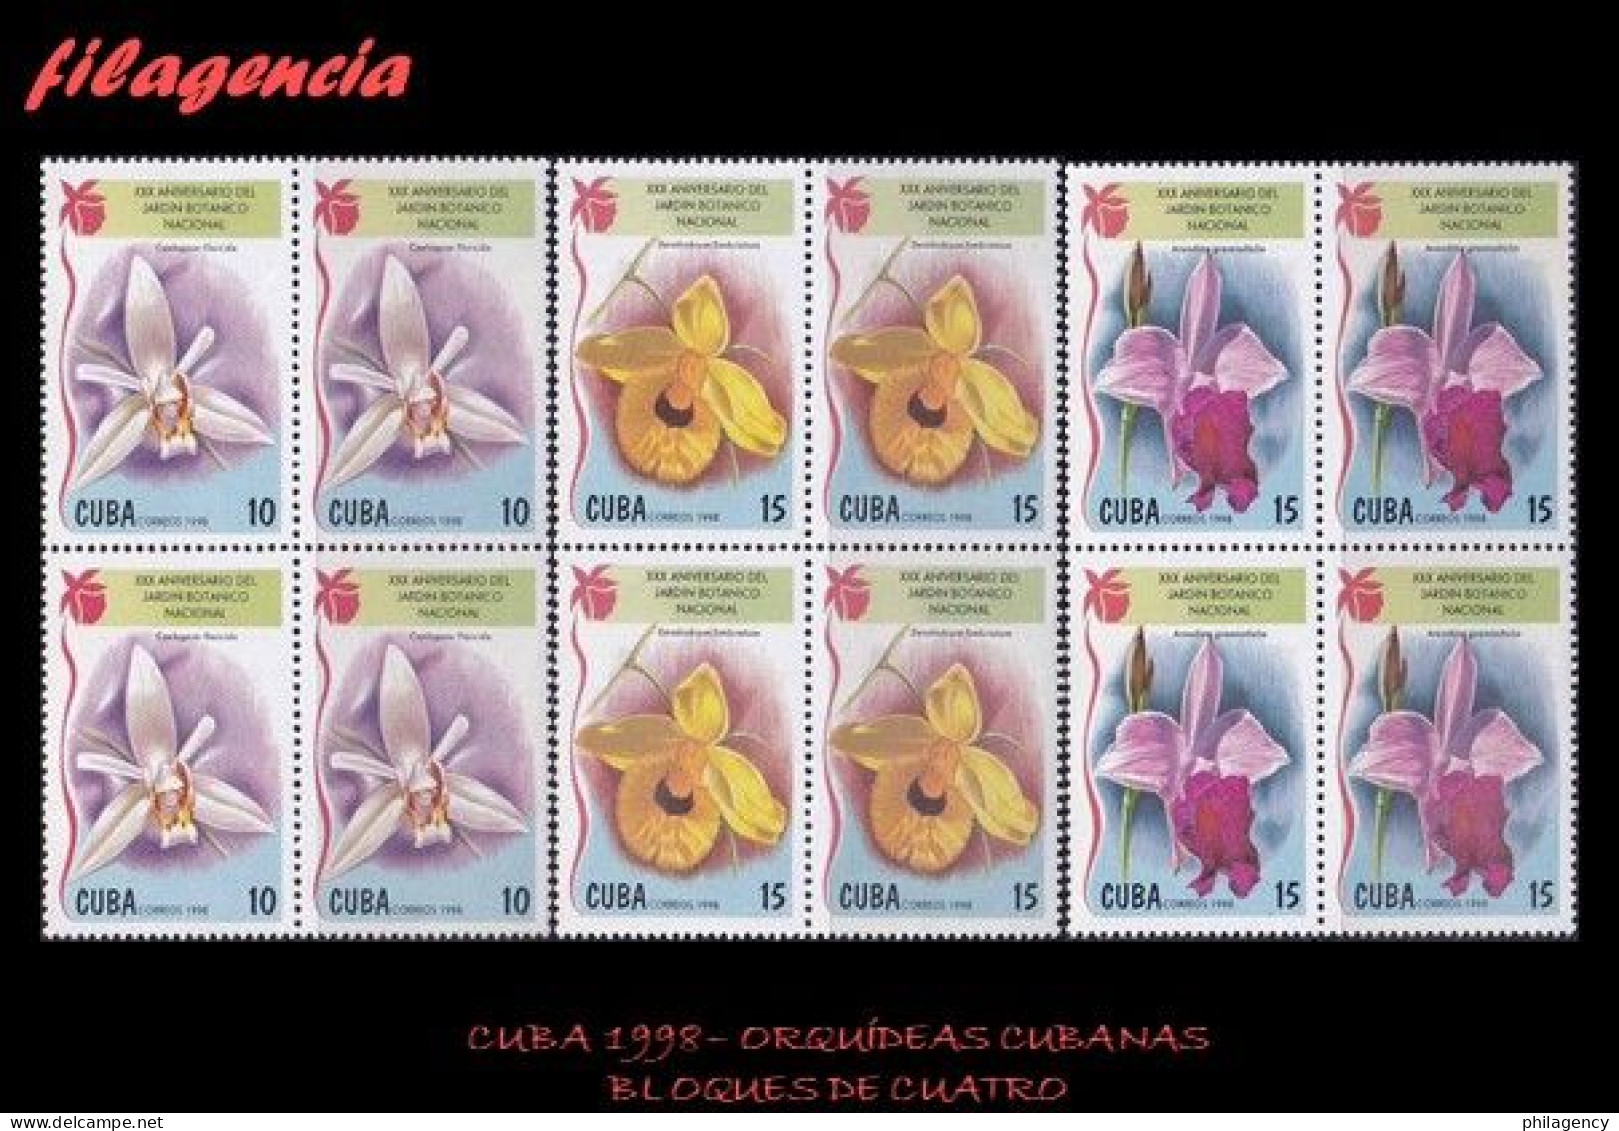 CUBA. BLOQUES DE CUATRO. 1998-23 FLORA. ORQUÍDEAS CUBANAS - Nuevos